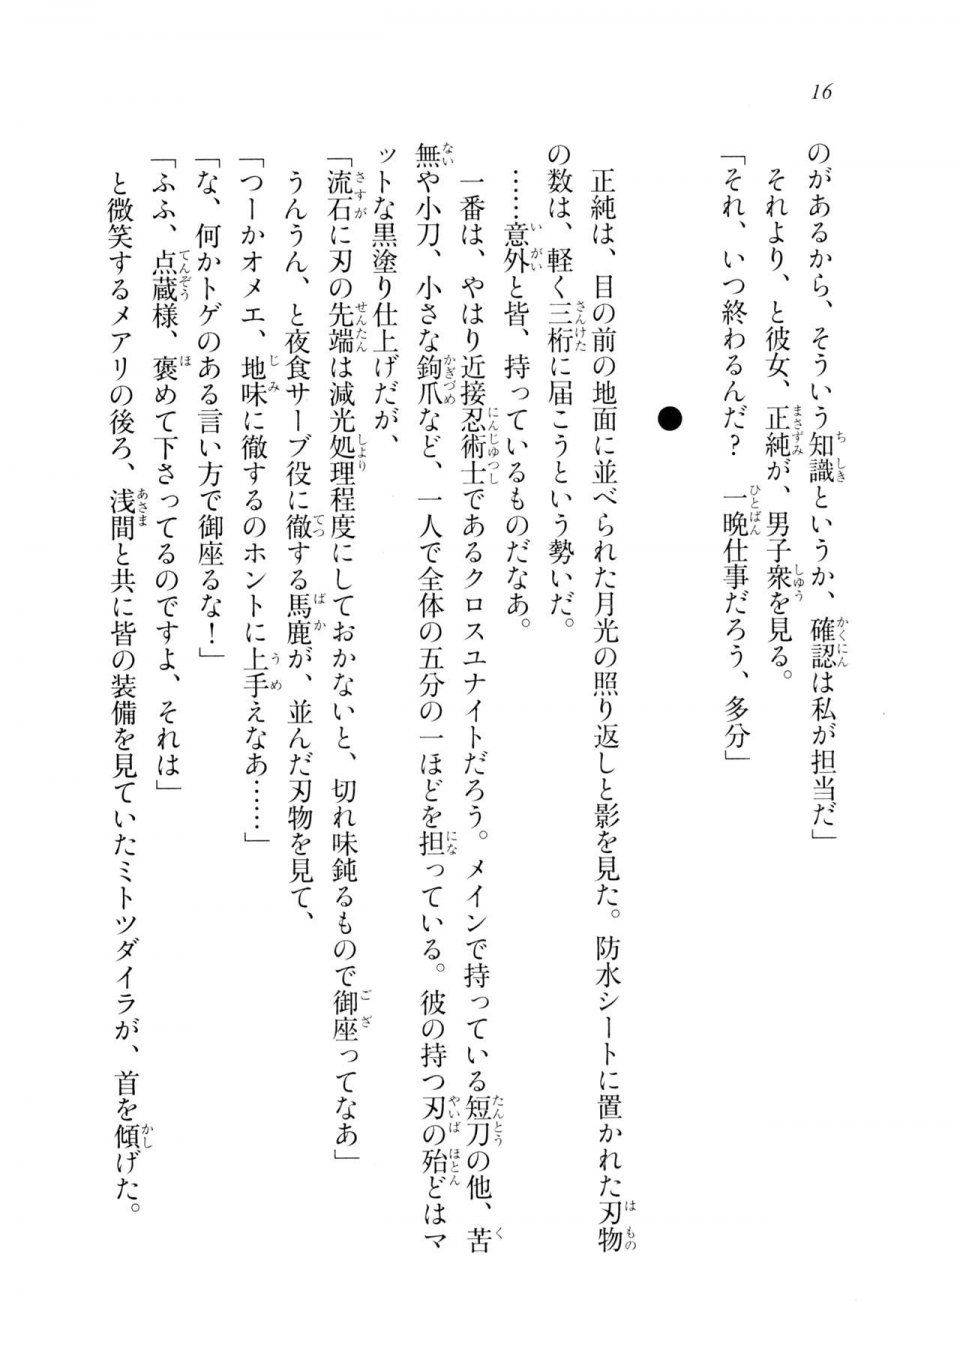 Kyoukai Senjou no Horizon LN Sidestory Vol 2 - Photo #15